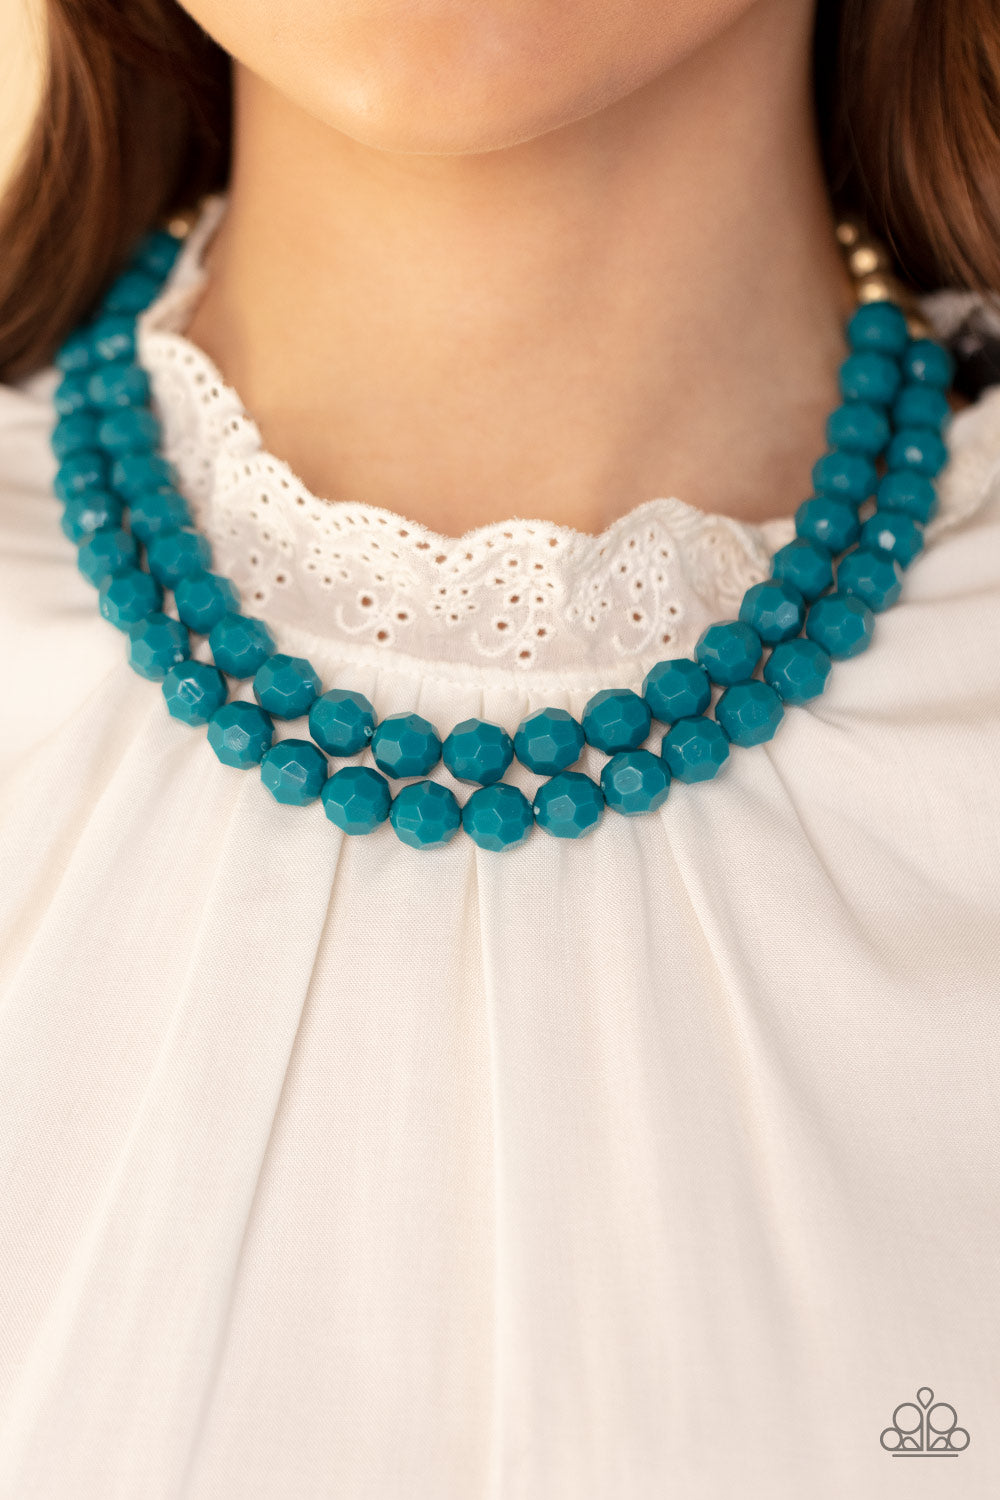 Greco Getaway - Blue Necklace - Paparazzi Accessories